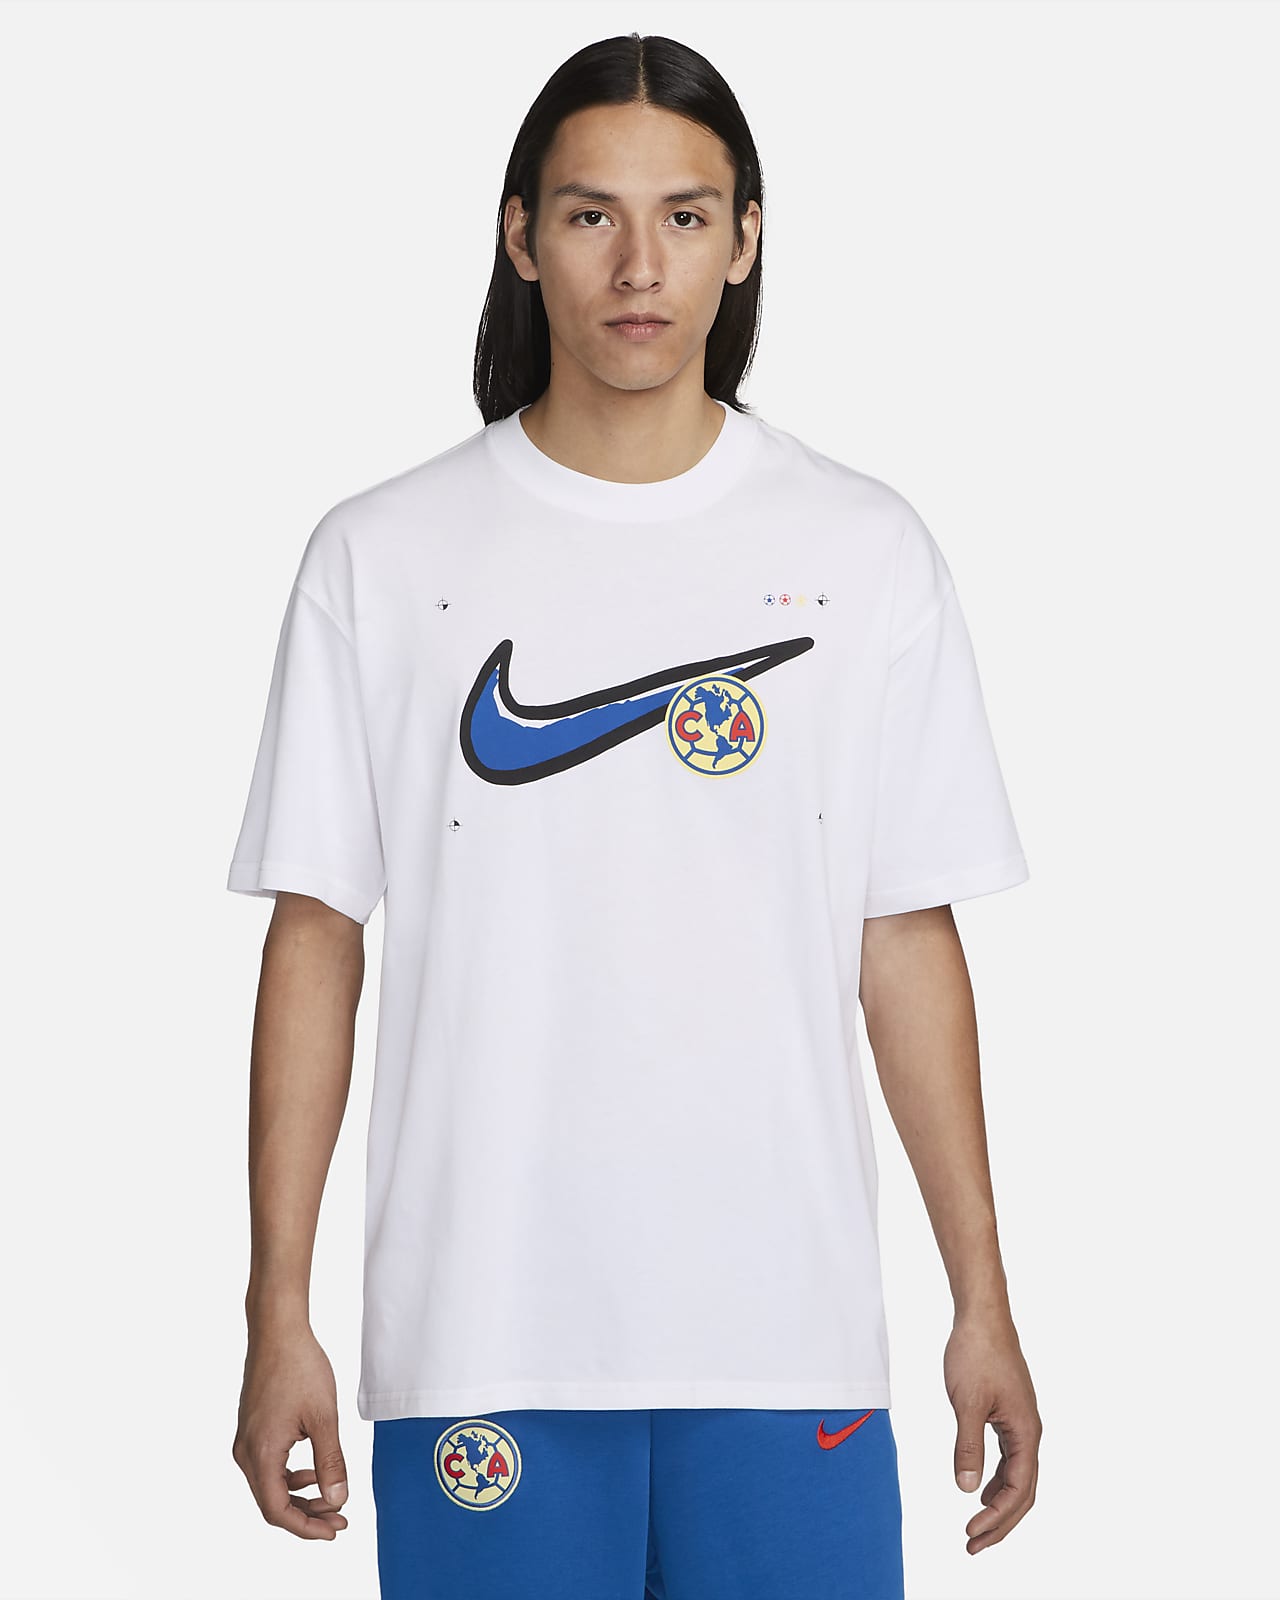 Club América Men's Nike Soccer Max90 T-Shirt